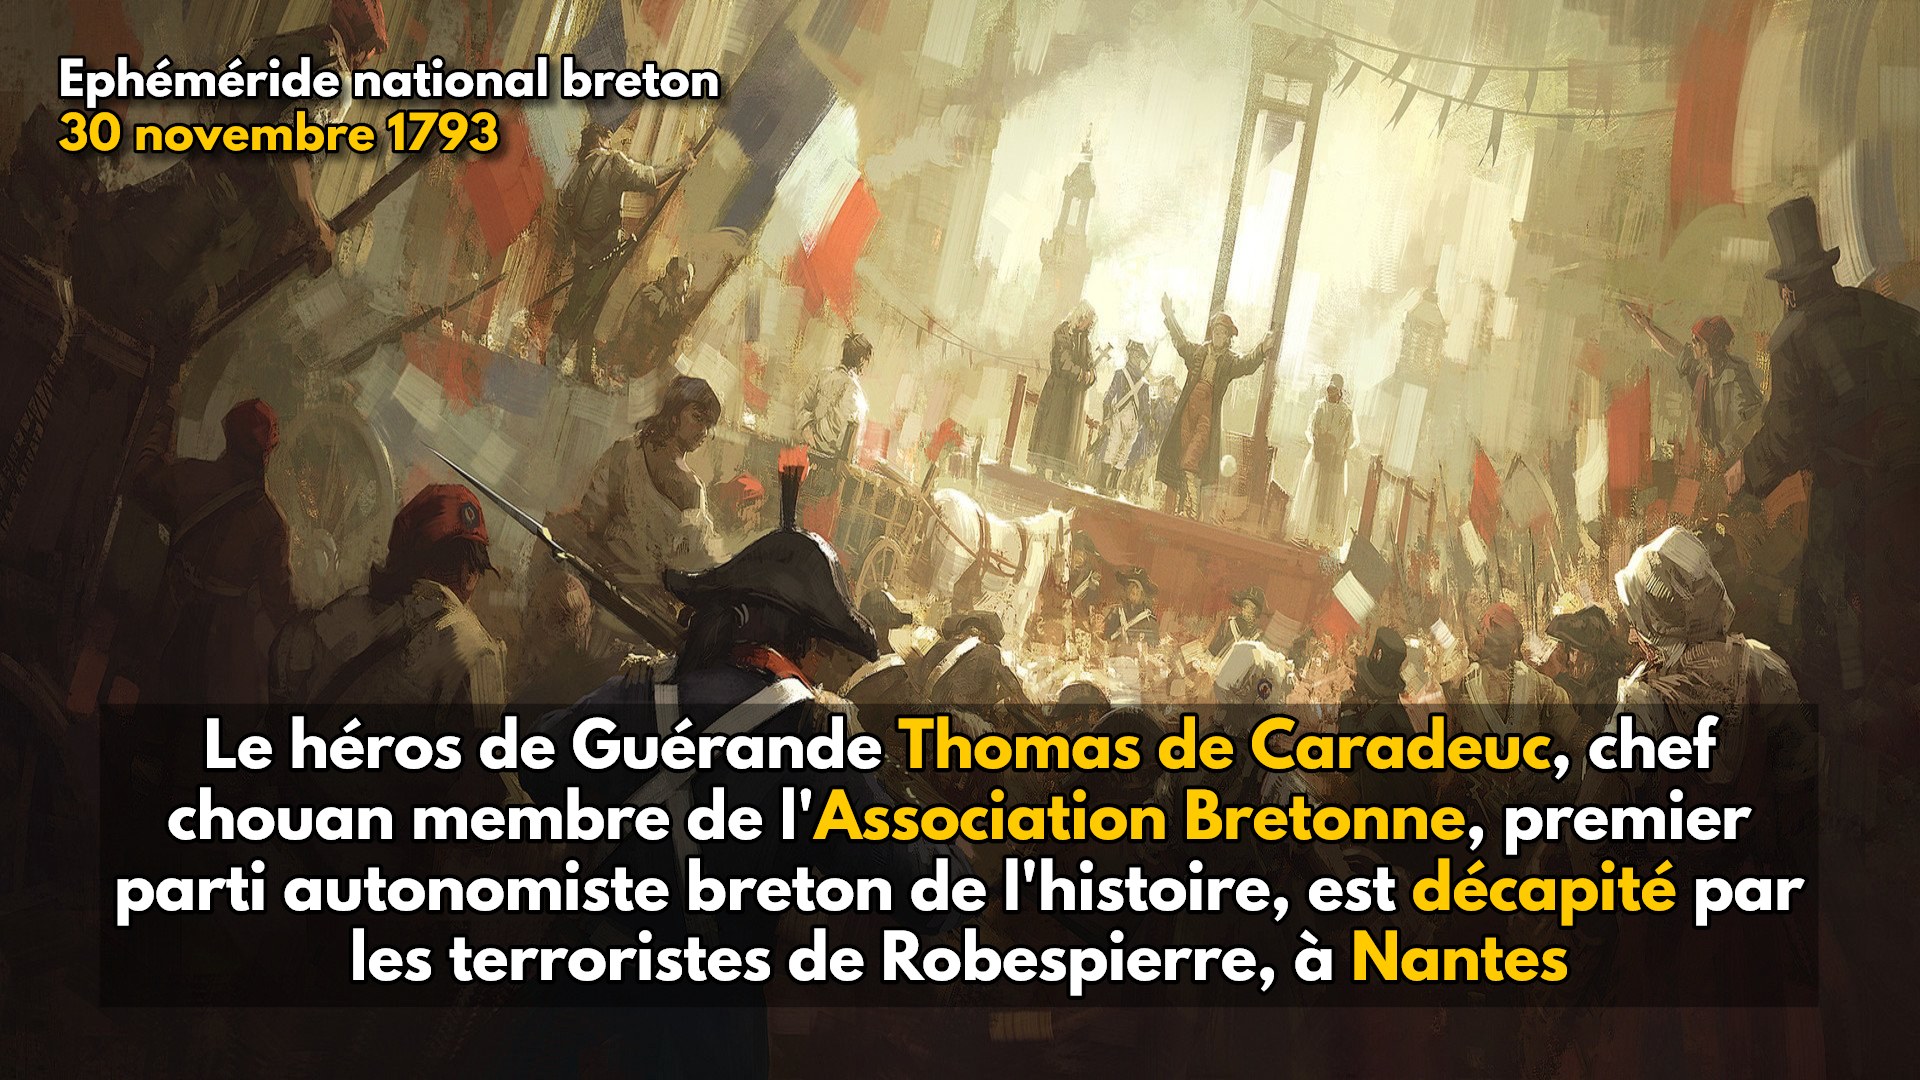 30 novembre 1793 : le héros des chouans de Guérande Thomas de Caradeuc est décapité par les terroristes républicains de Robespierre à Nantes